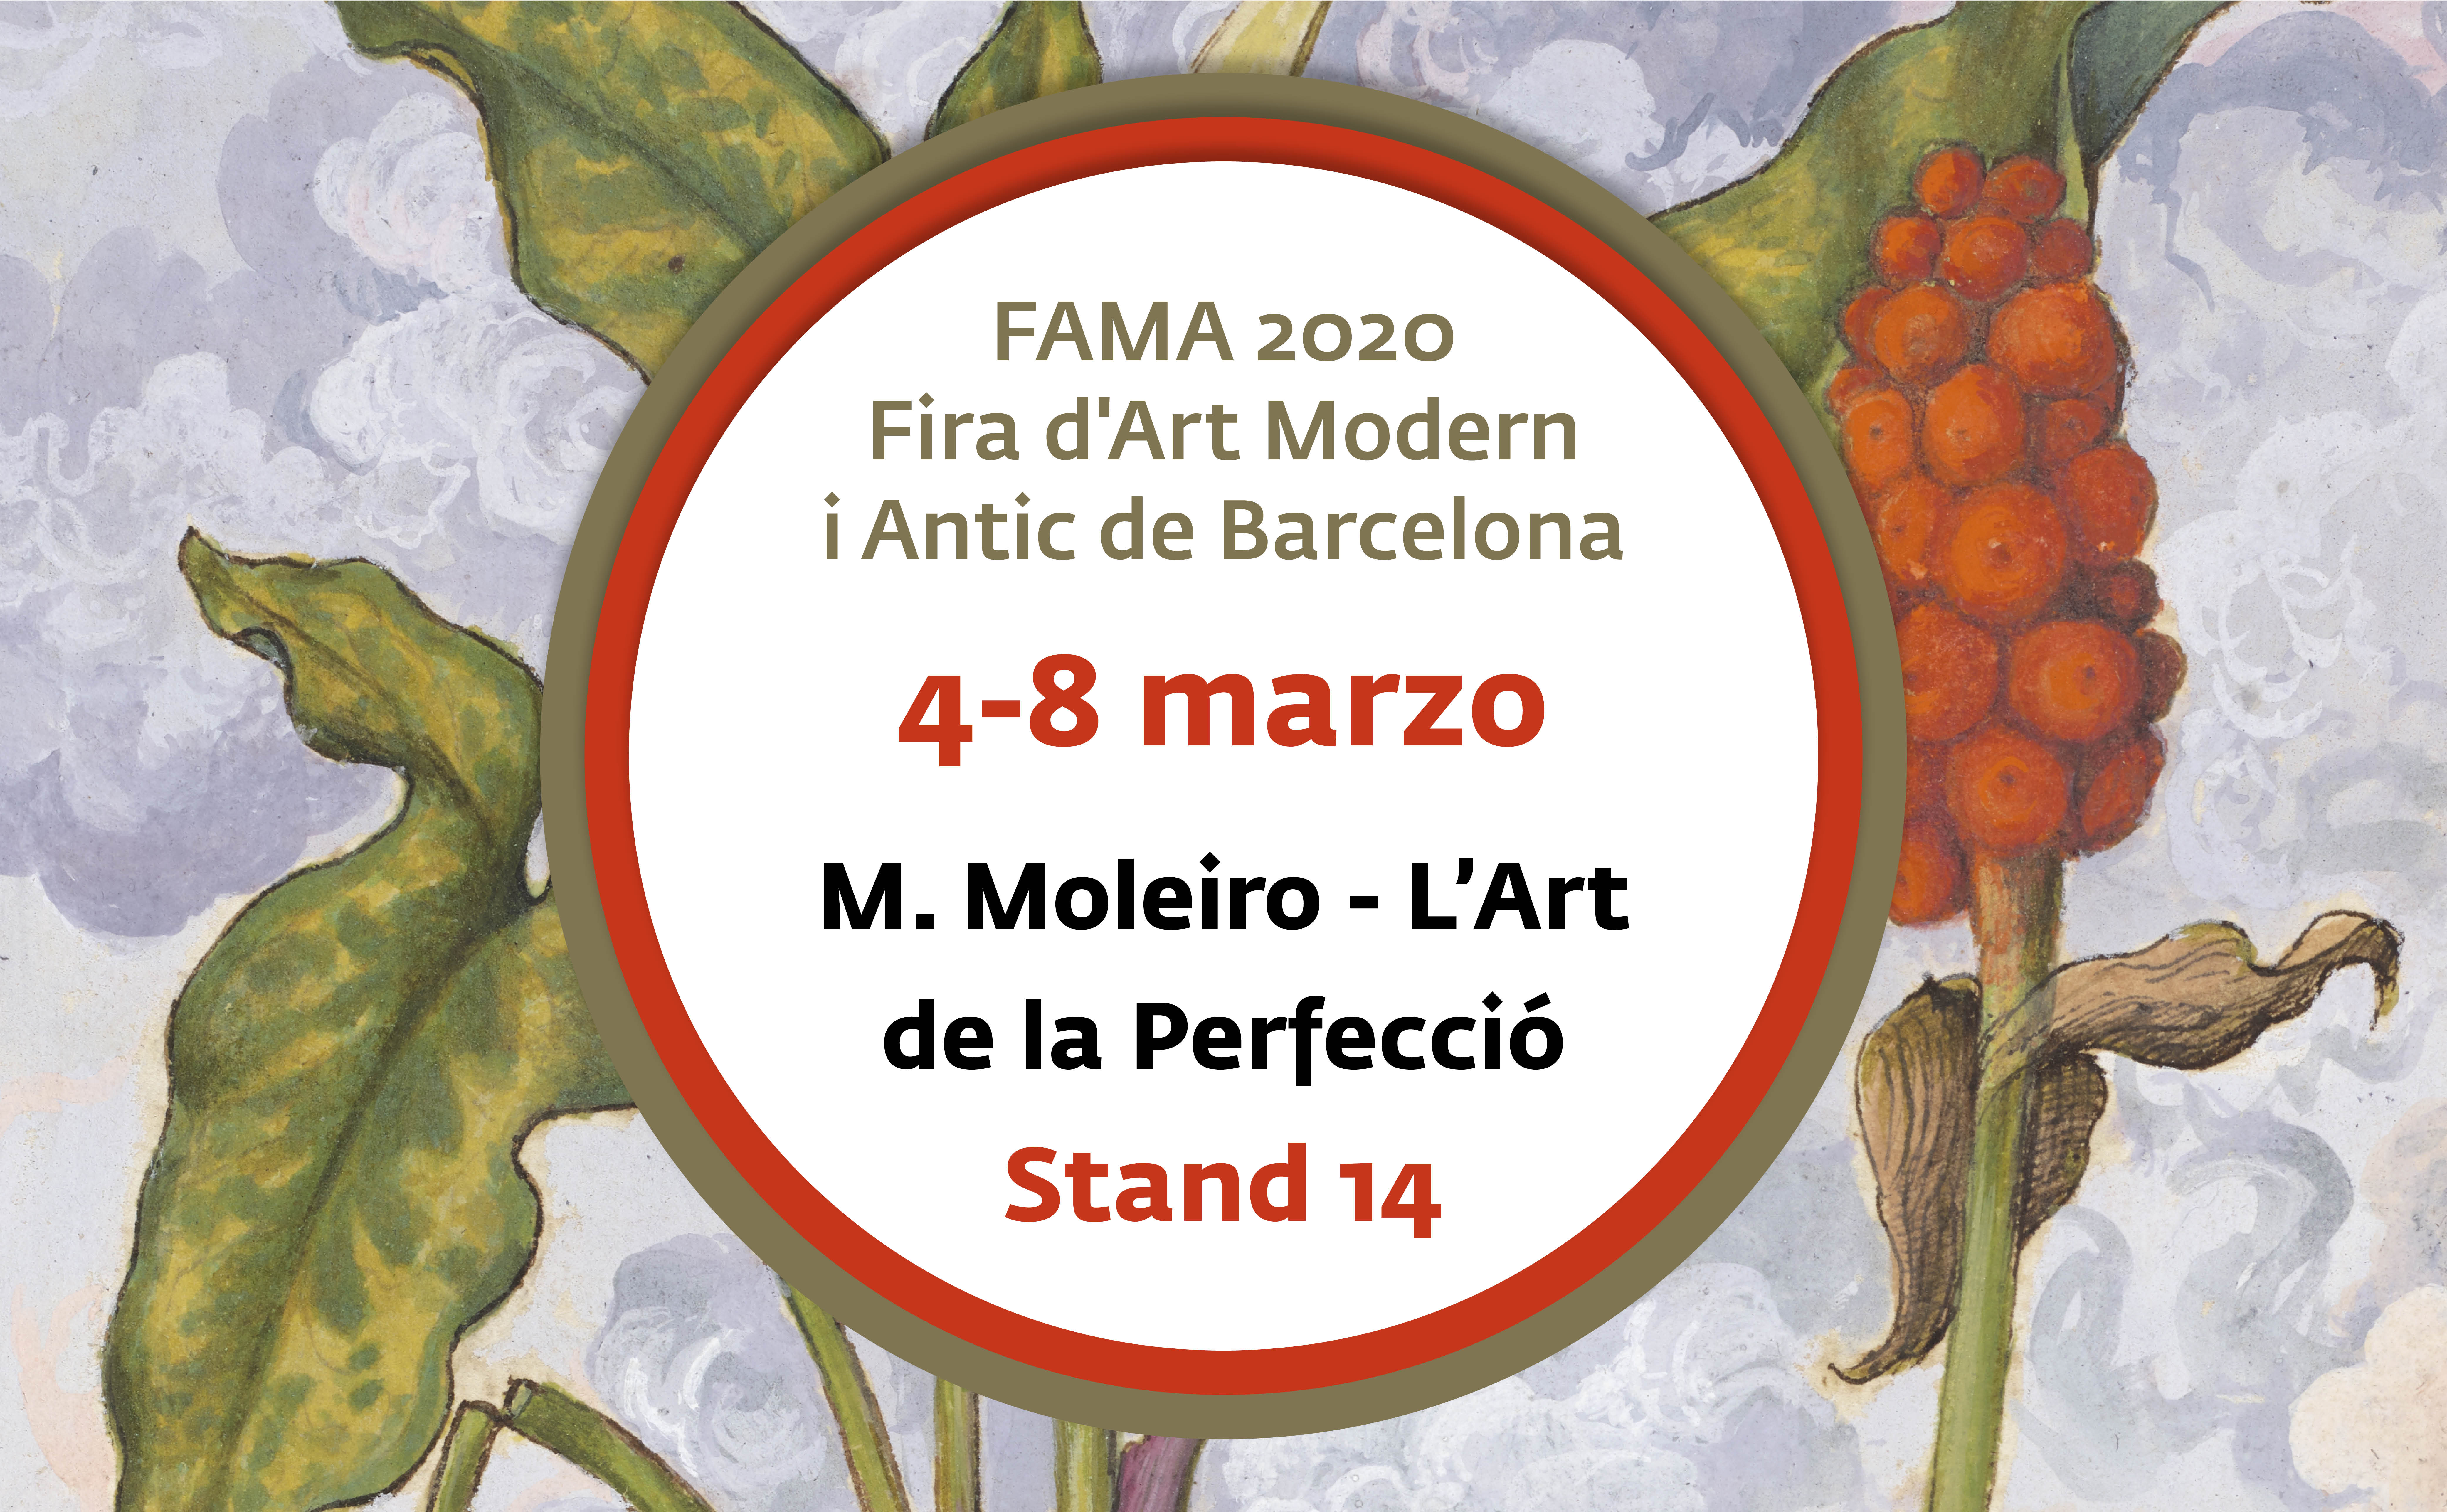 FAMA 2020 Fira d´Art Modern i Antic de Barcelona del 4 al 8 de marzo